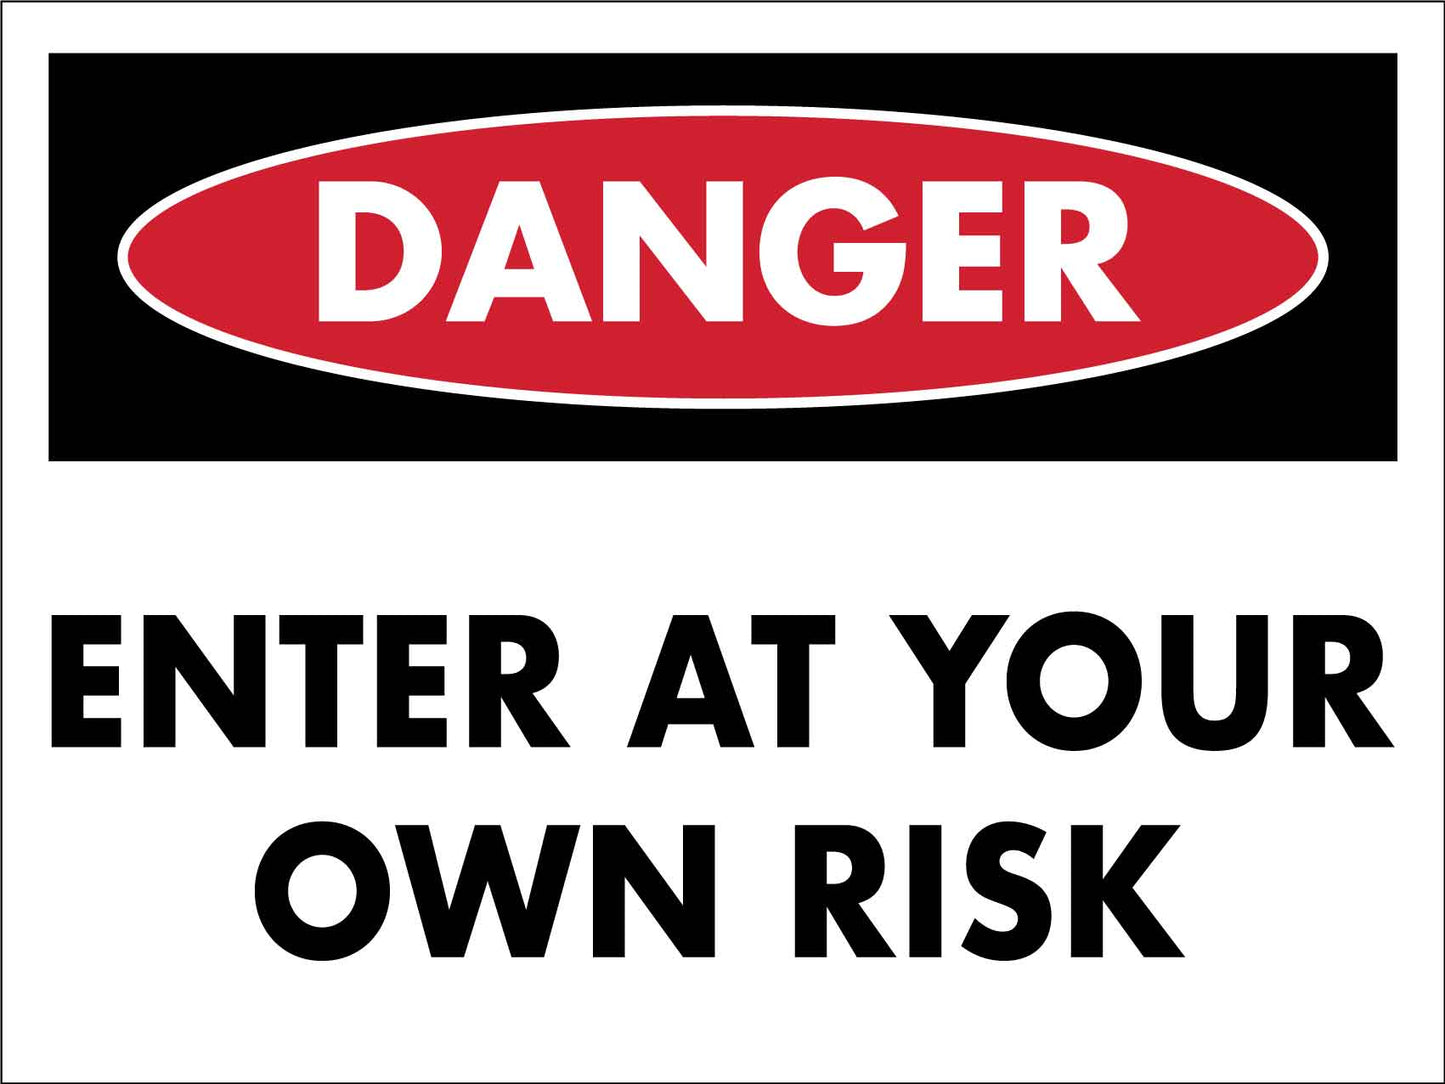 Danger Enter At Your Own Risk Sign